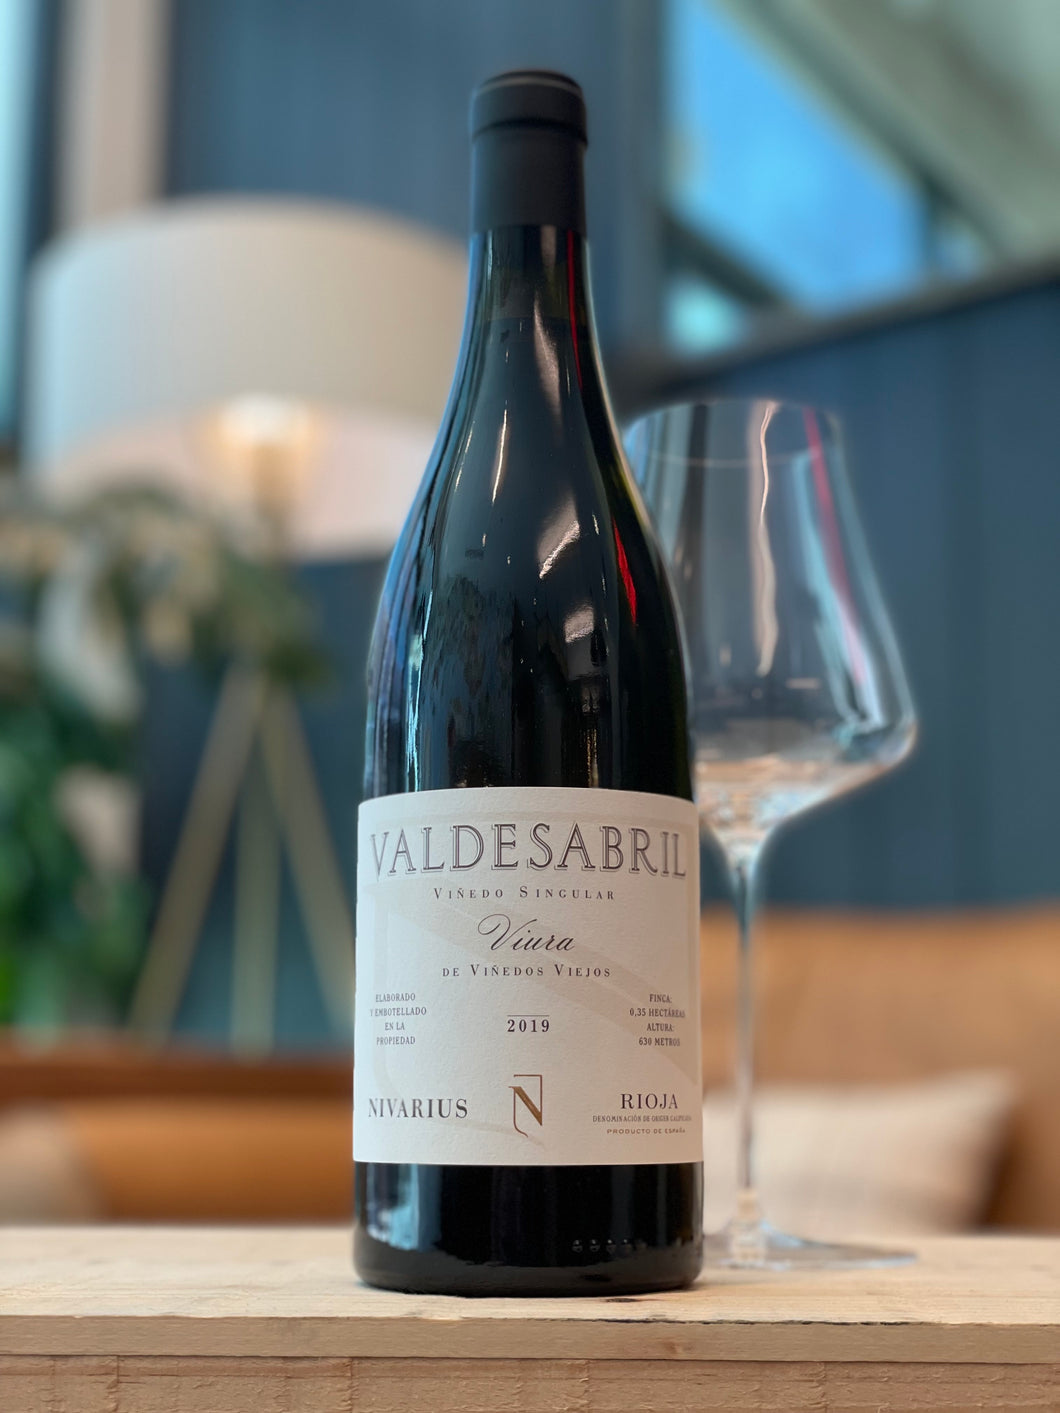 Rioja Blanco, Nivarius “Valdesabril” 2019